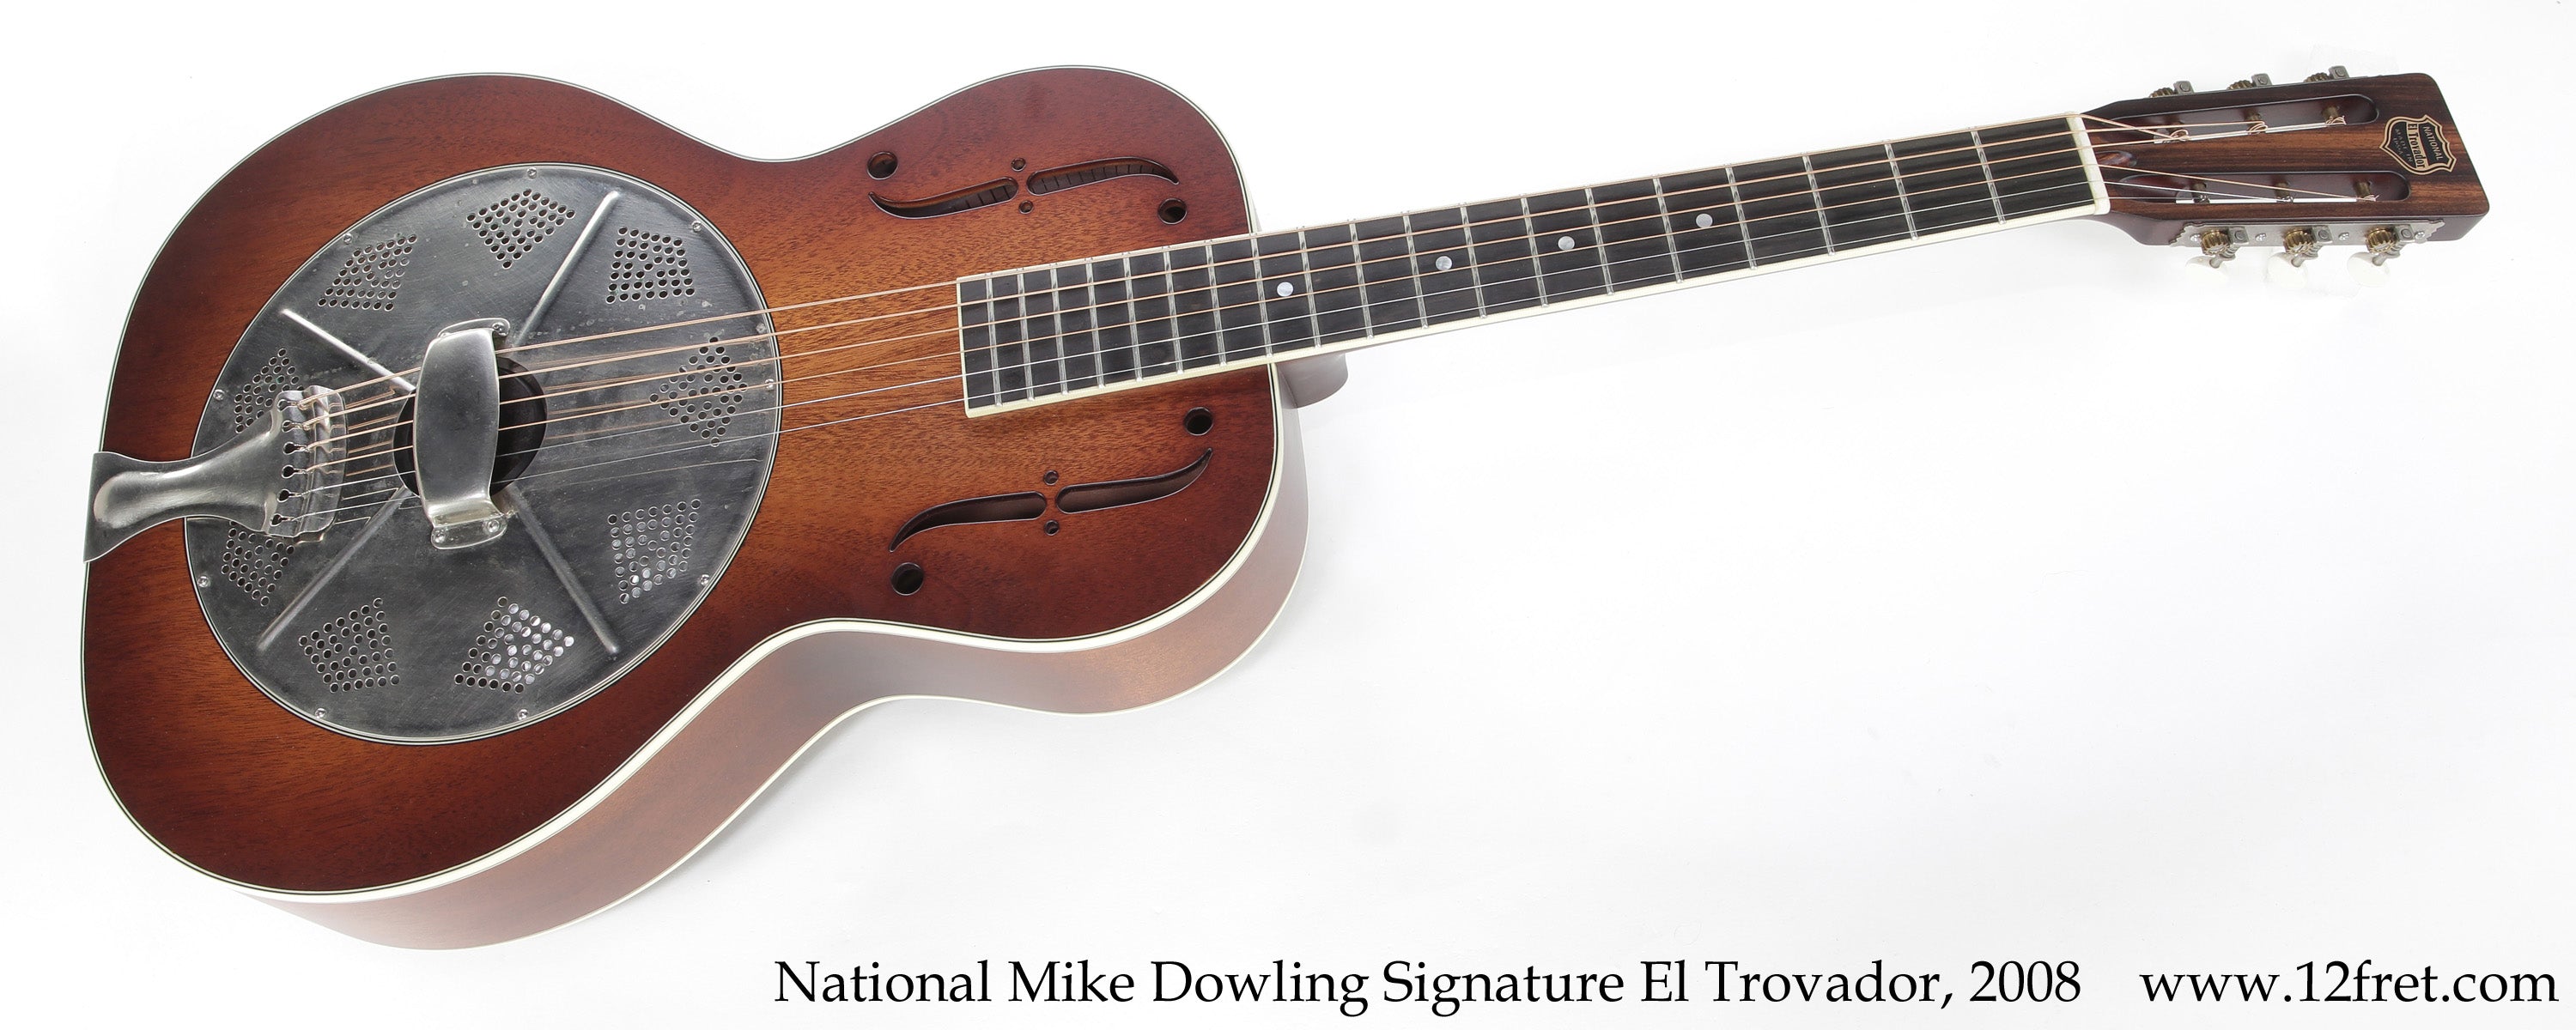 National Mike Dowling Signature El Trovador Natural, 2008 - The Twelfth Fret